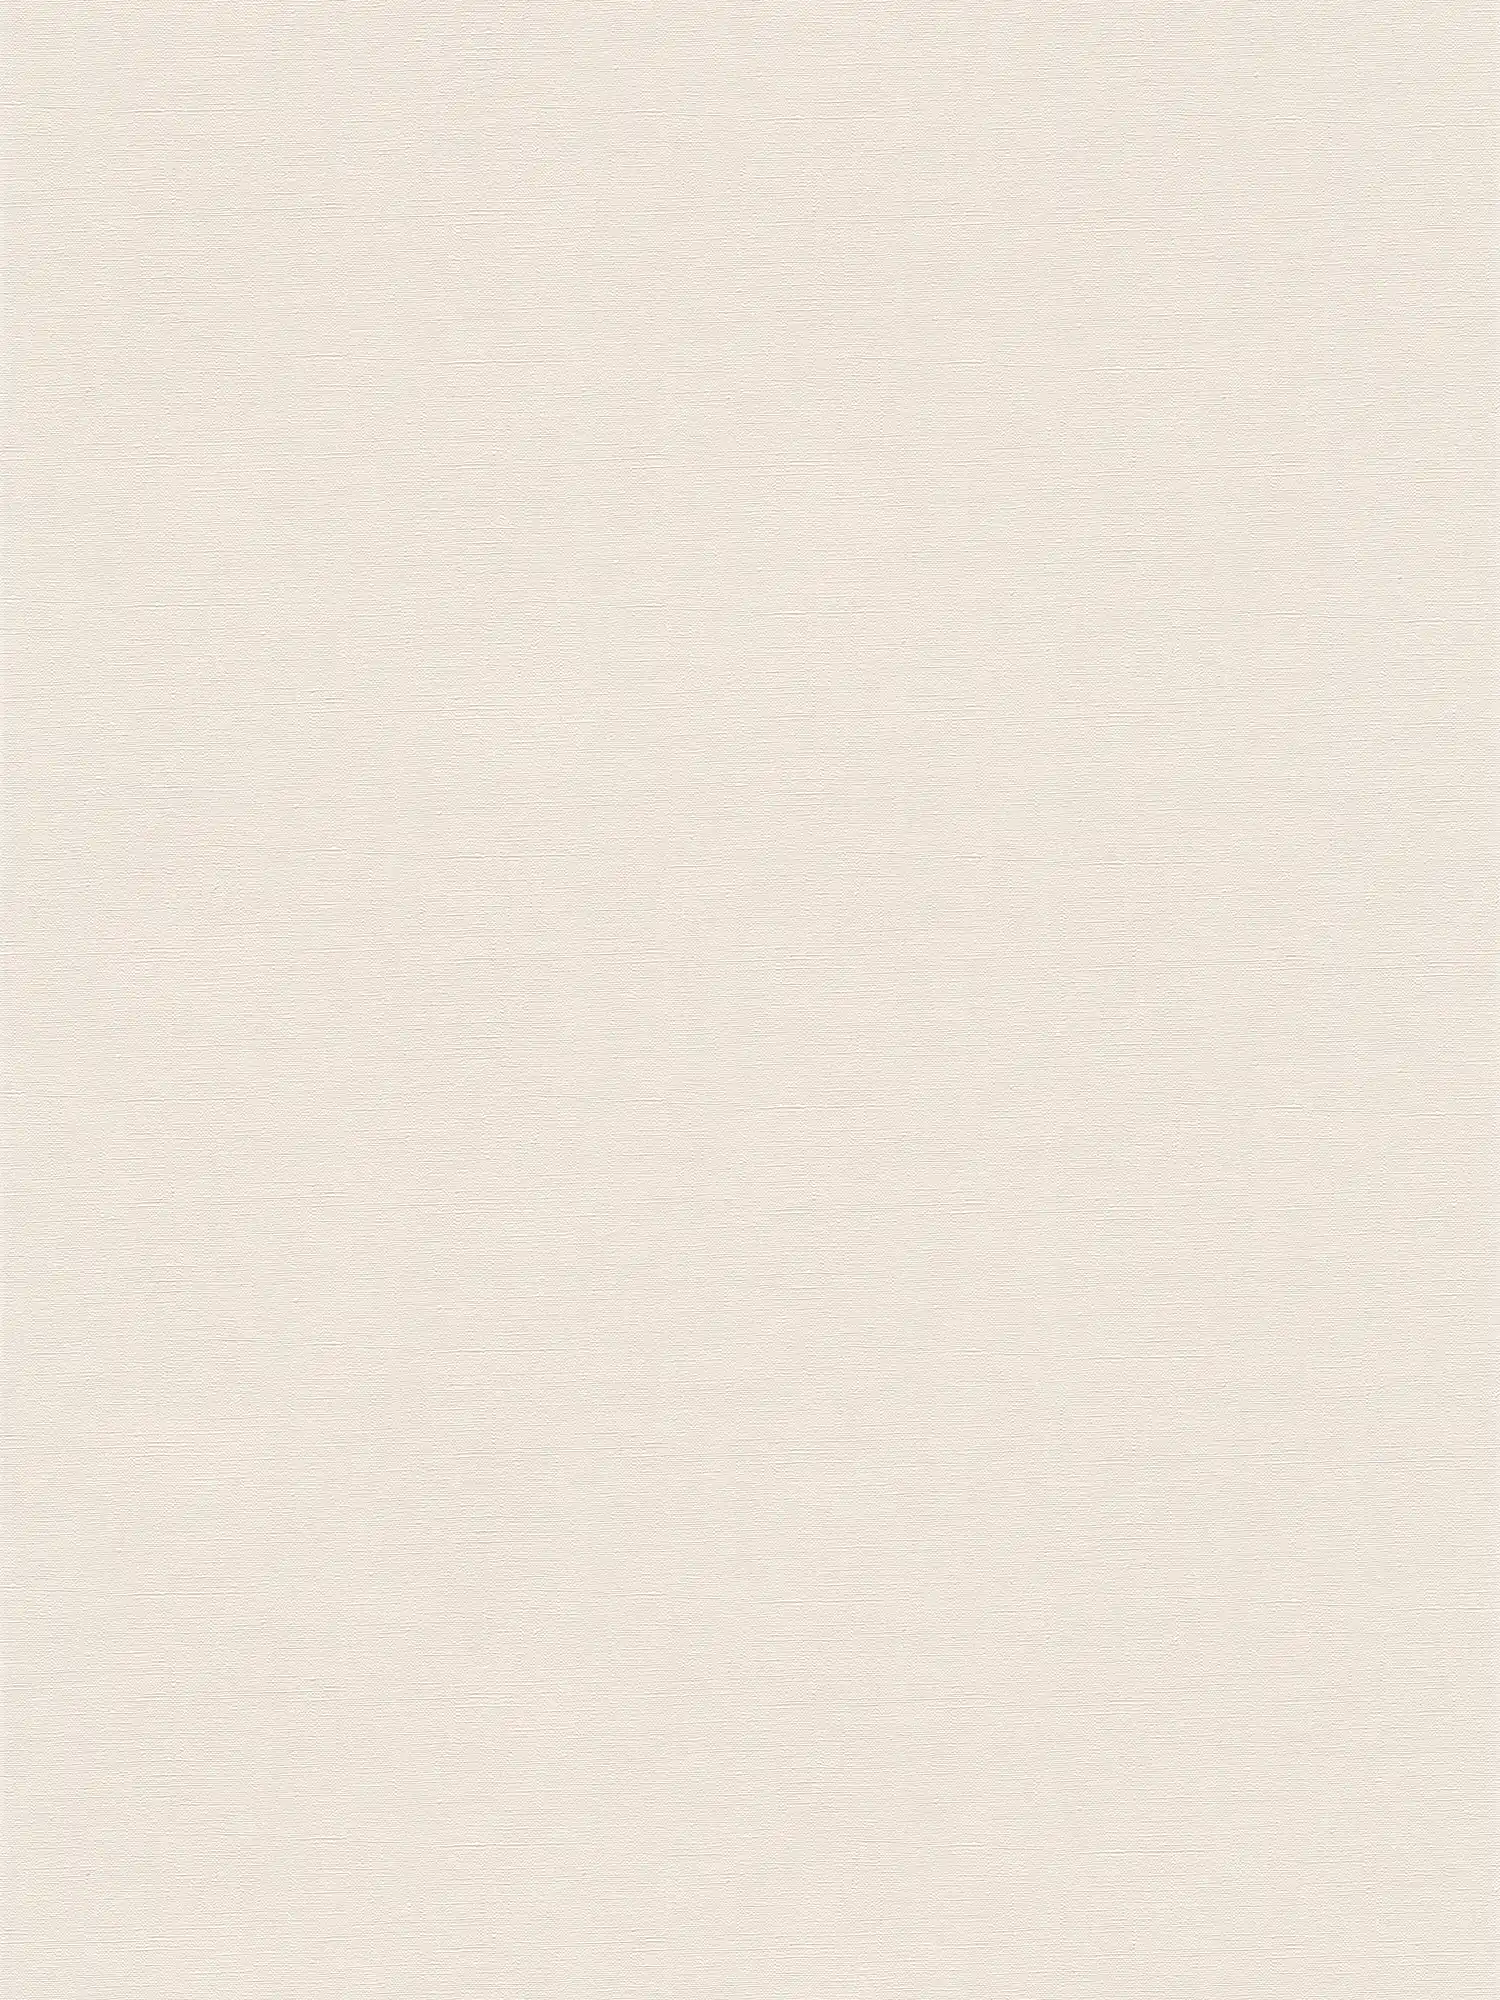             Papier peint intissé uni avec légère brillance - beige, crème
        